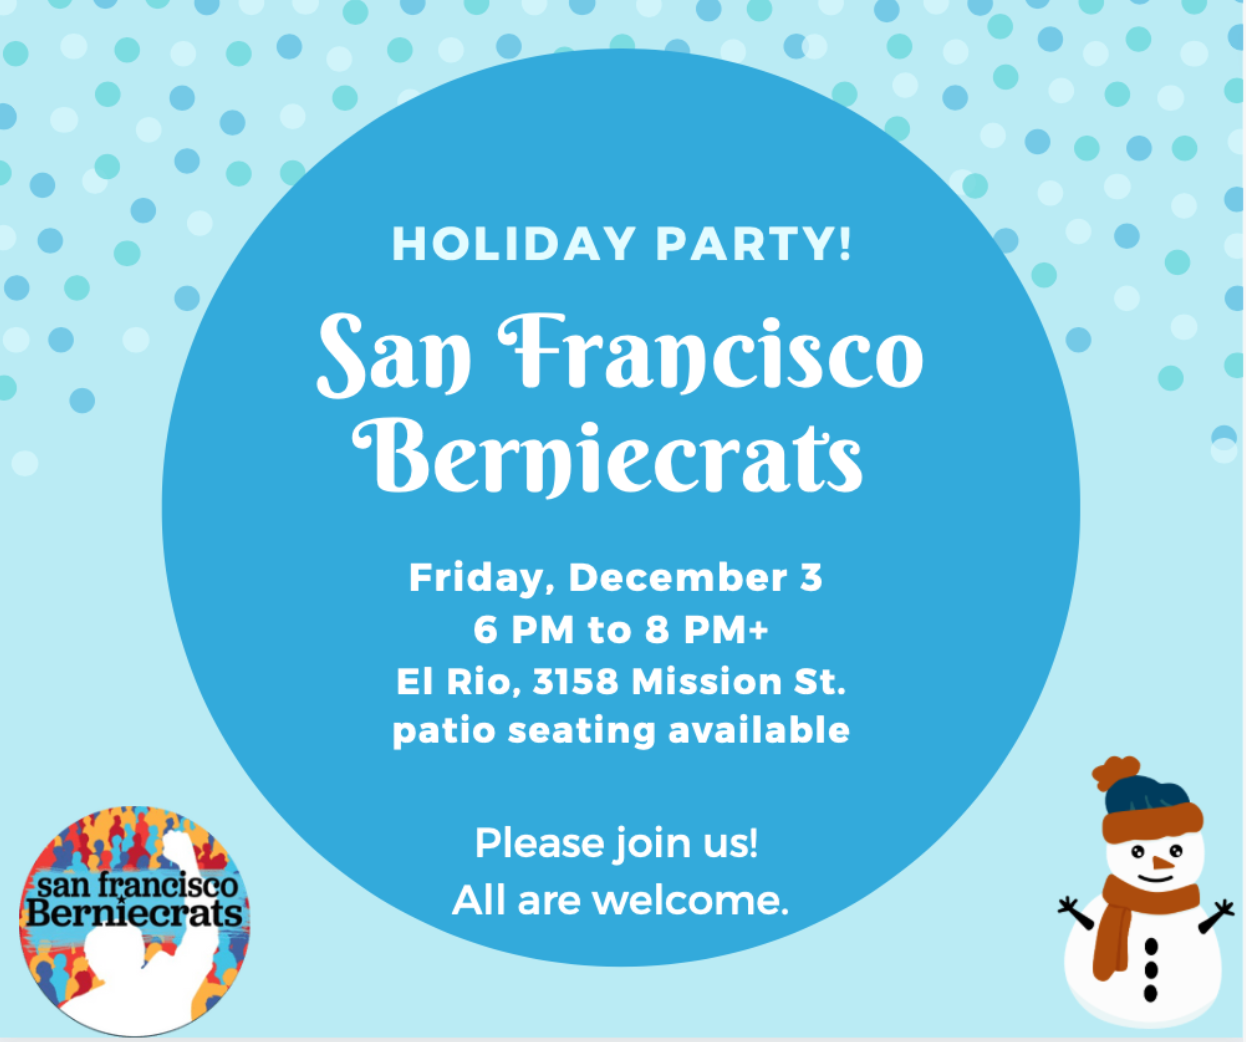 Berniecrats Holiday Party! @ El Rio